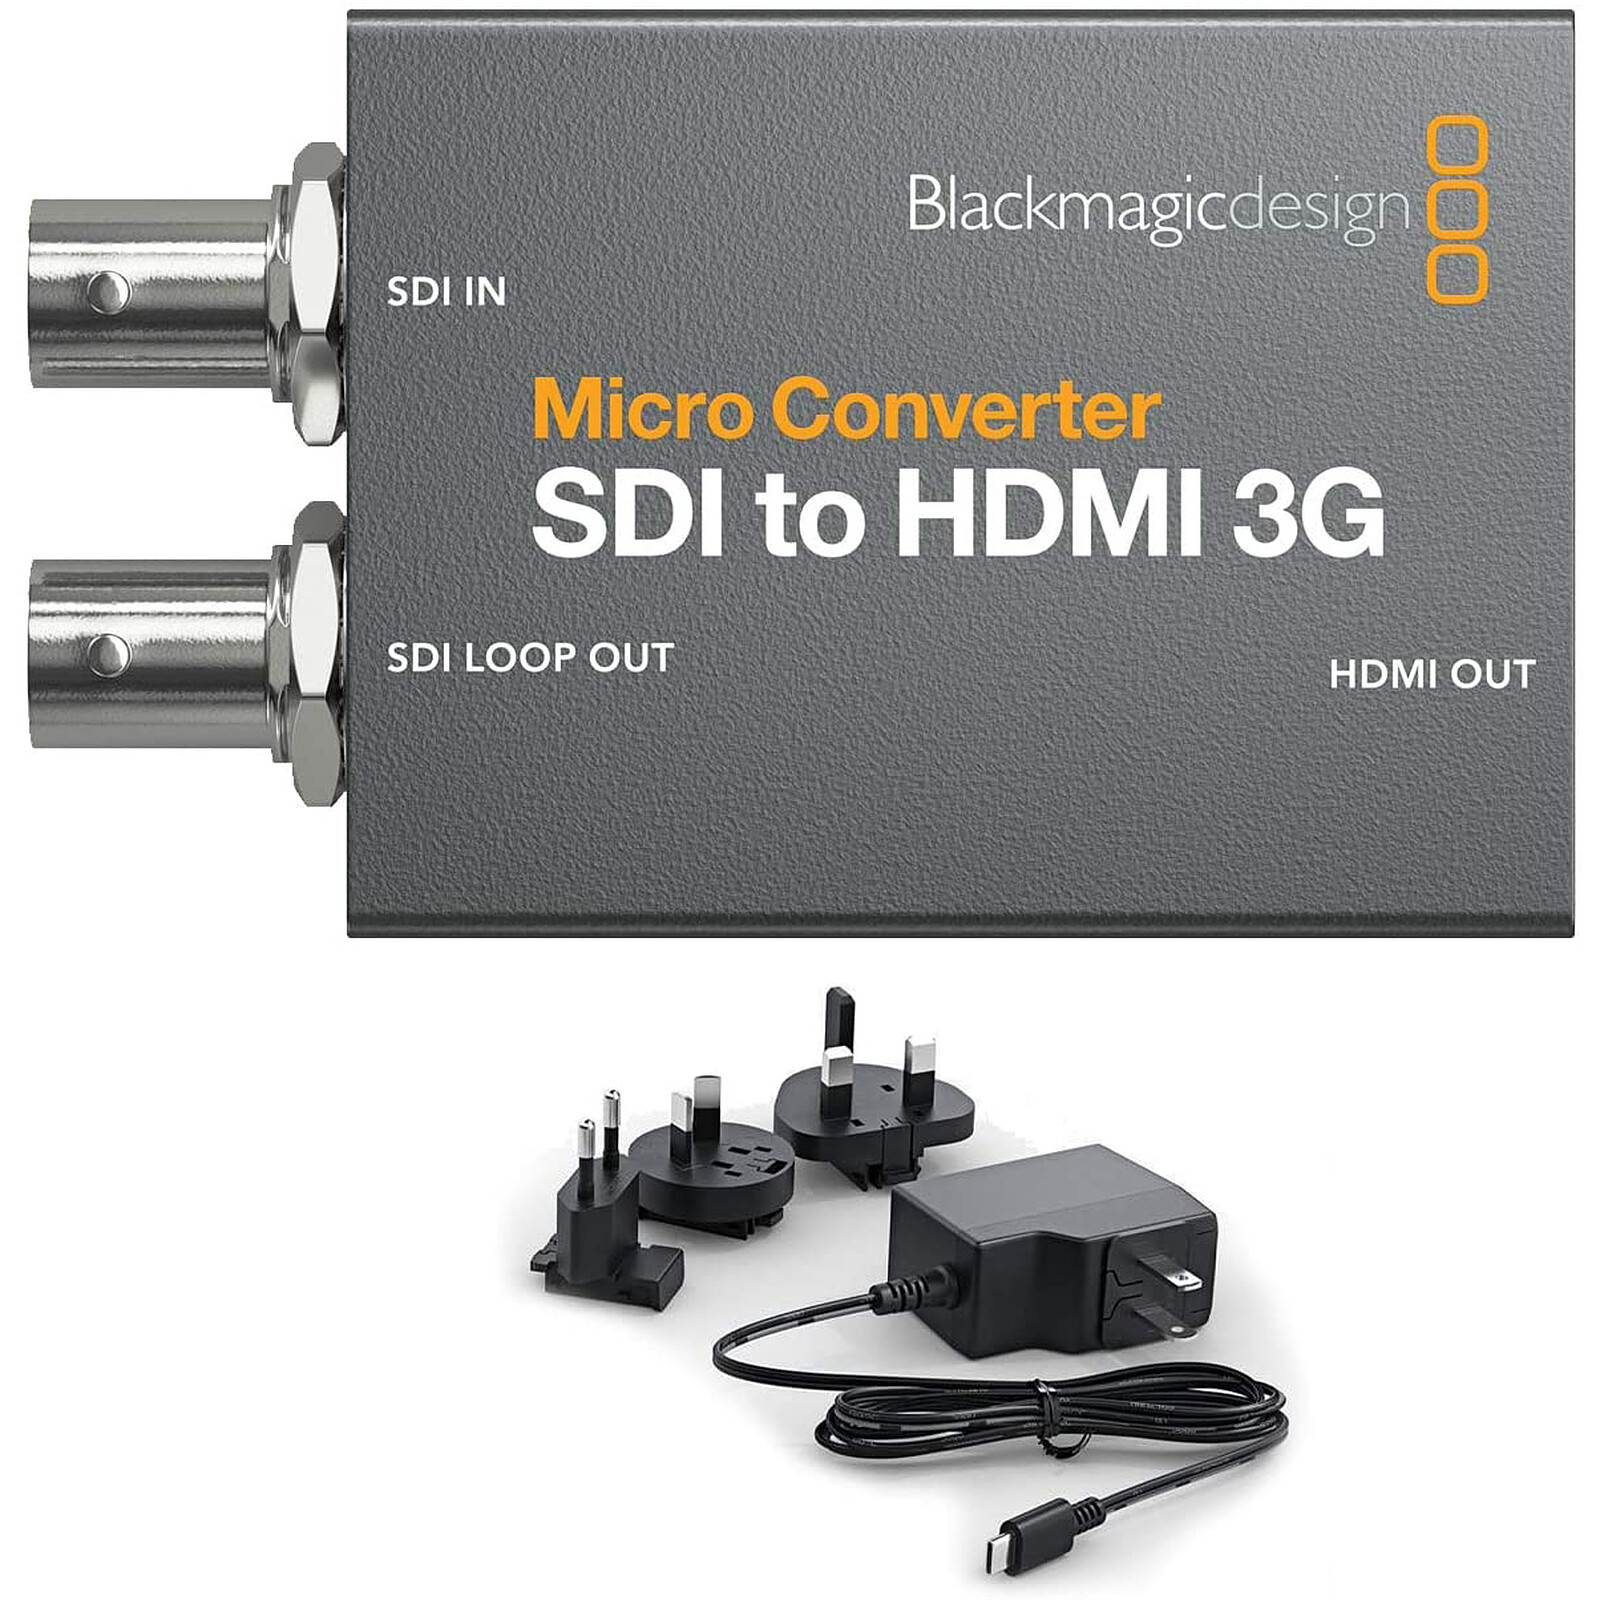 Realizable hélice crédito Blackmagic Design Micro Convertidor SDI a HDMI 3G wPSU - Tarjeta  capturadora Blackmagic Design en LDLC | ¡Musericordia!